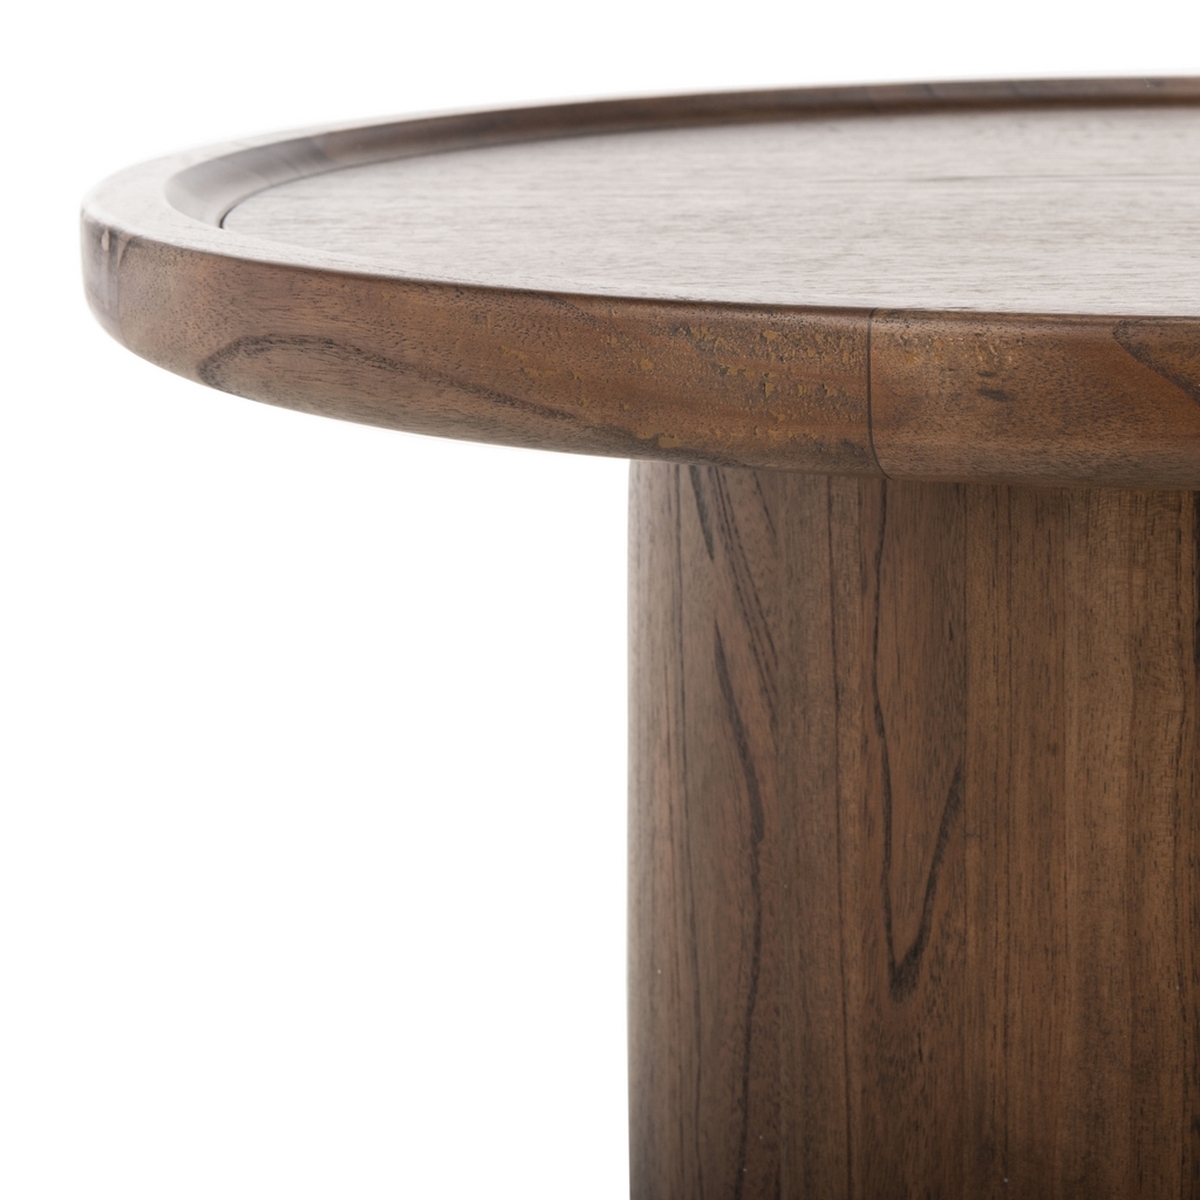 Devin Round Pedestal Coffee Table, Dark Walnut - Image 4